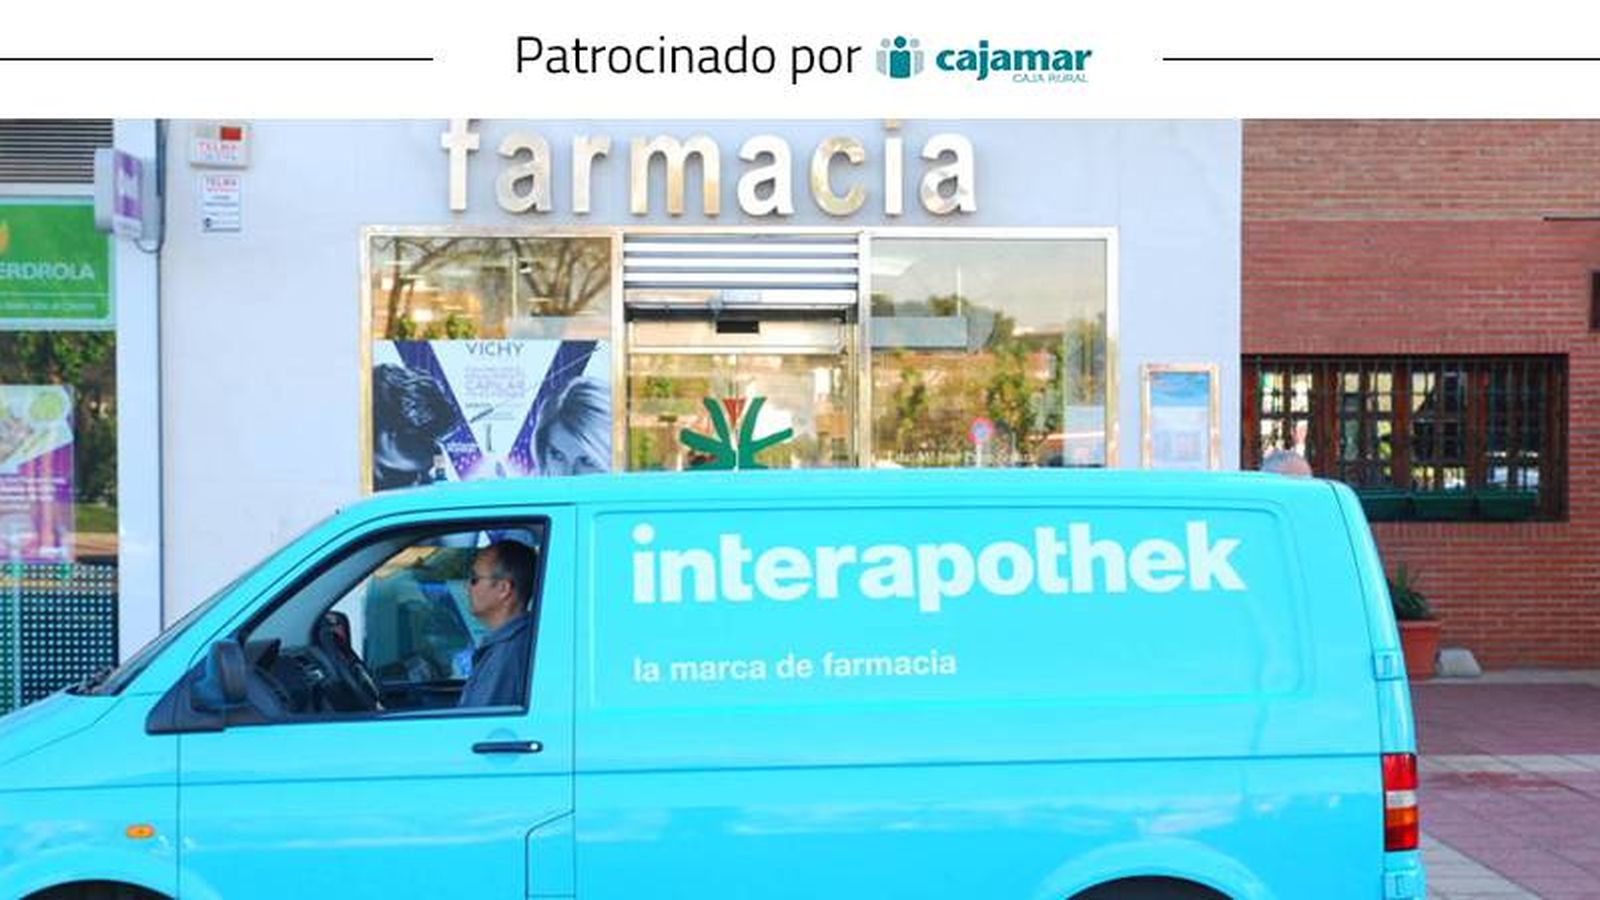 Foto: Además de servir medicamentos, Hefame distribuye su marca propia de parafarmacia, Interapothek.